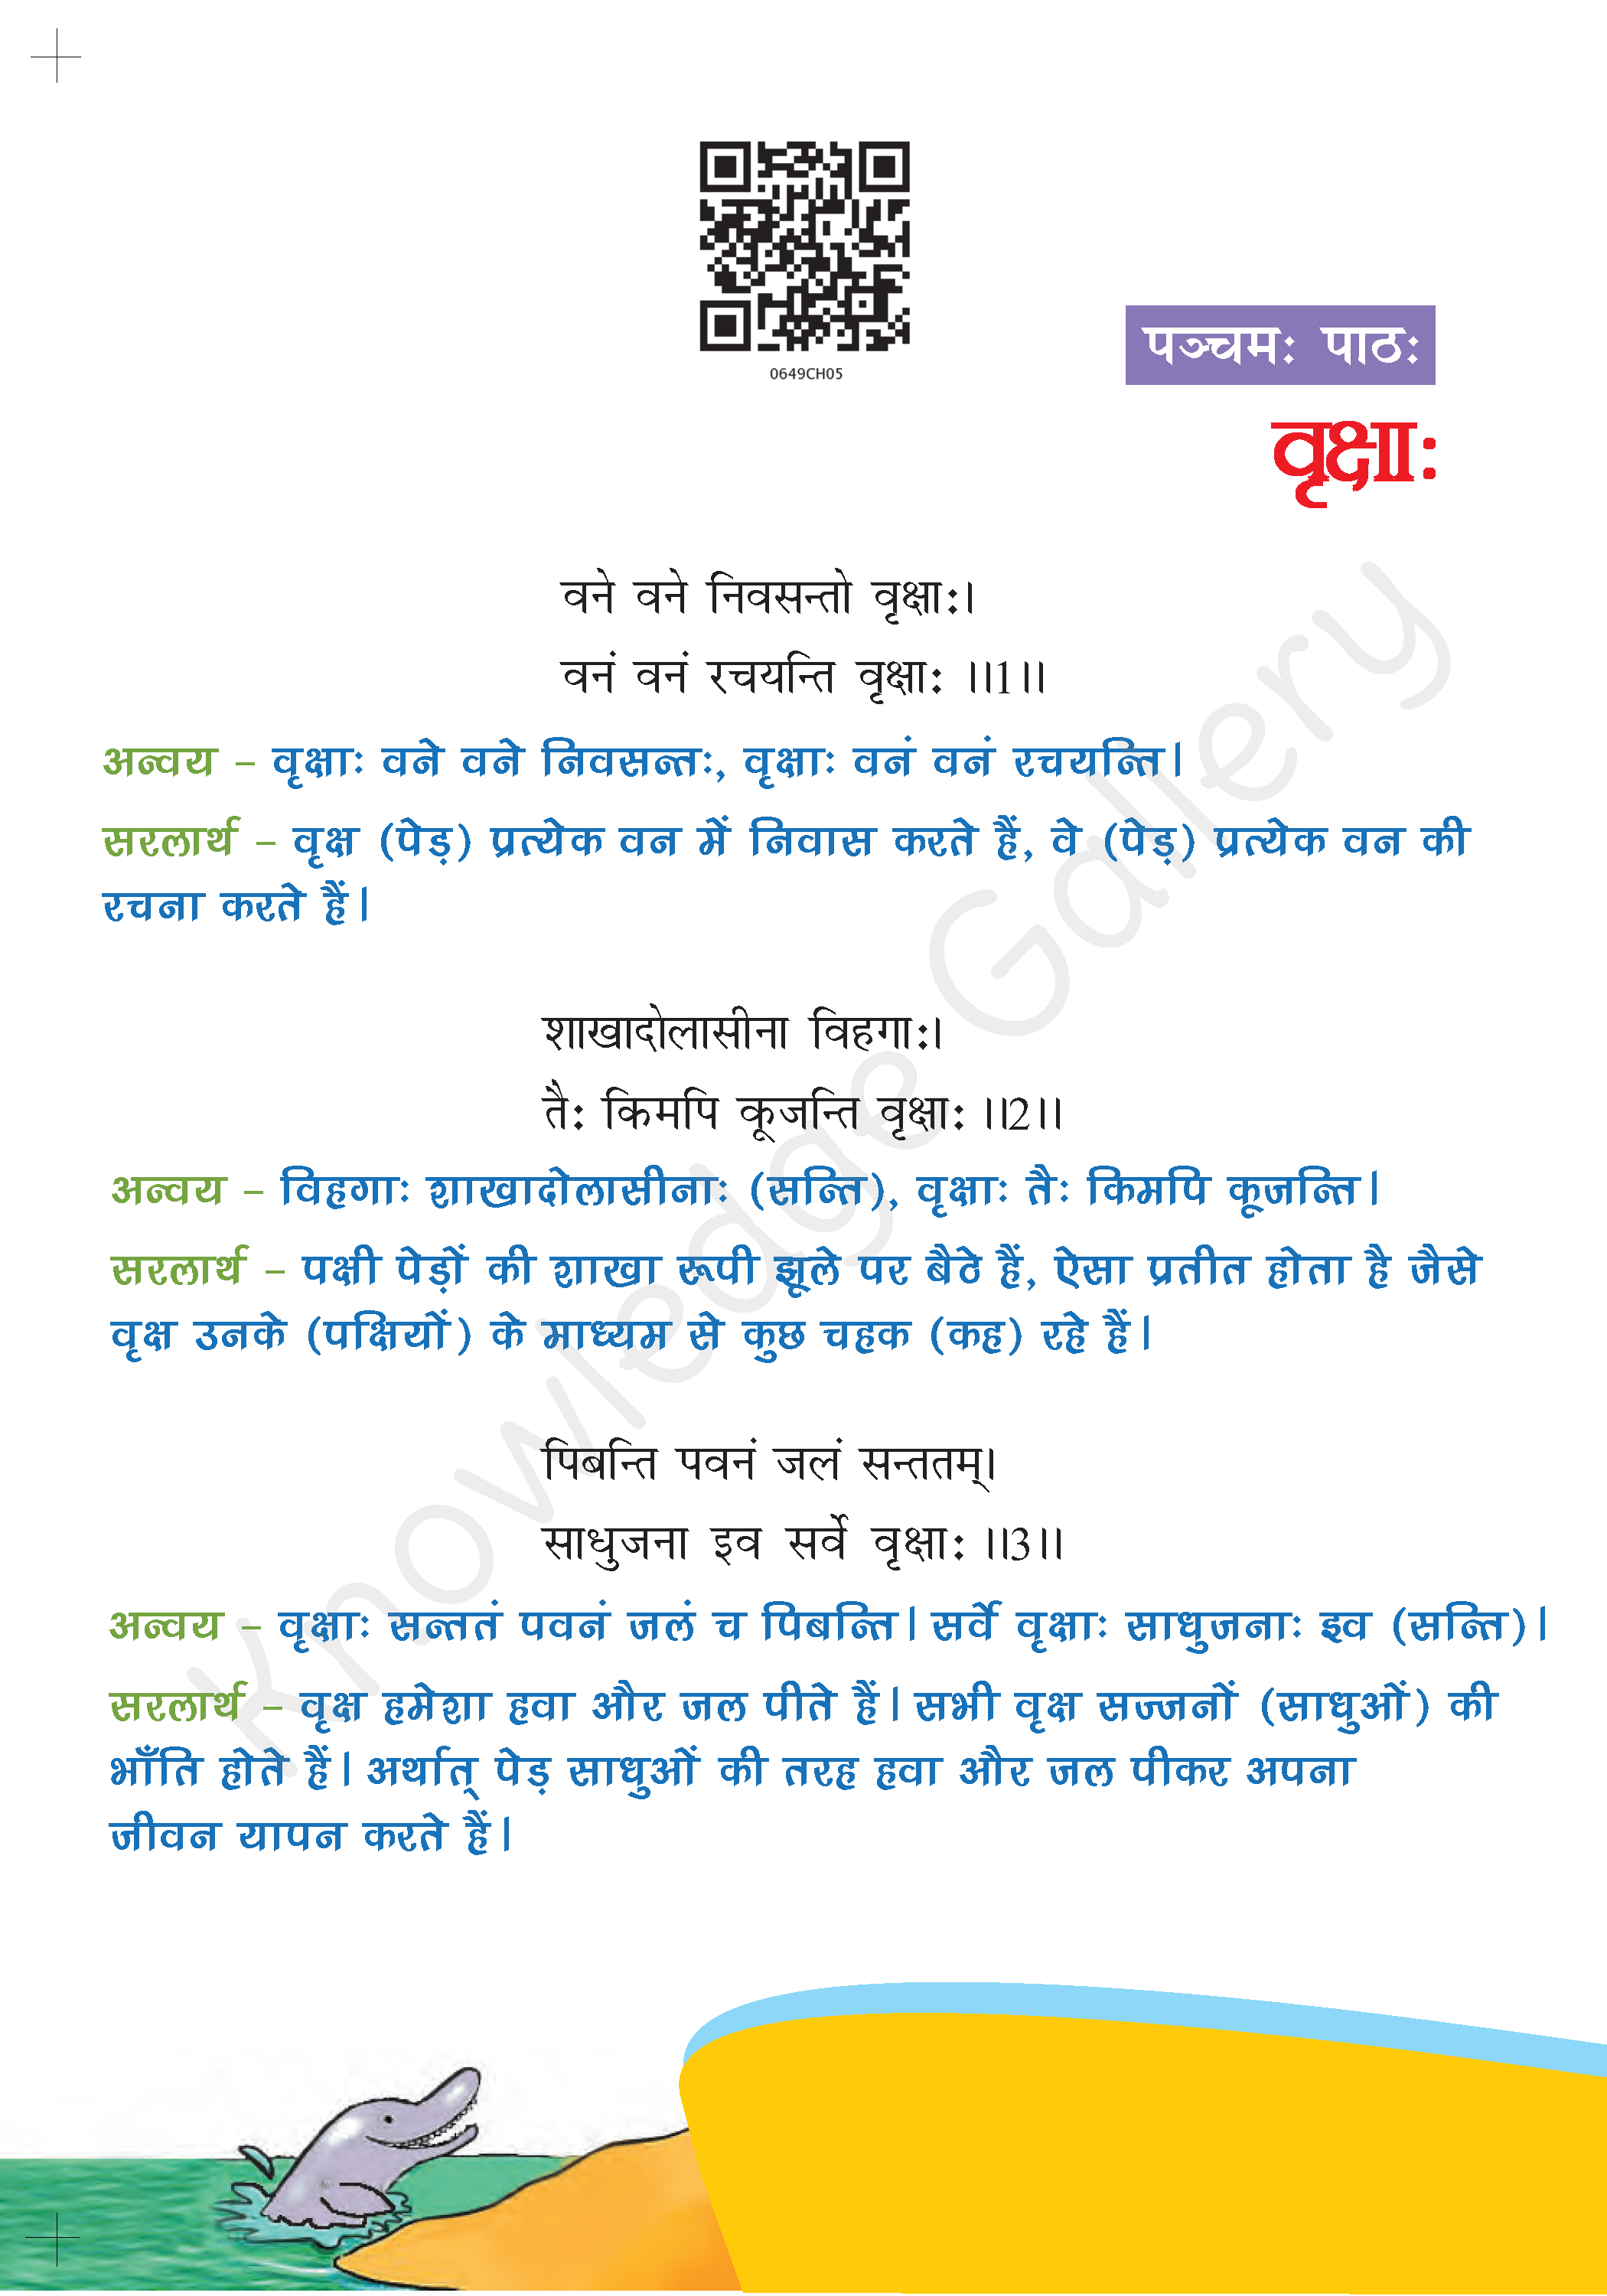 NCERT Solution For Class 6 Sanskrit Chapter 5 part 1